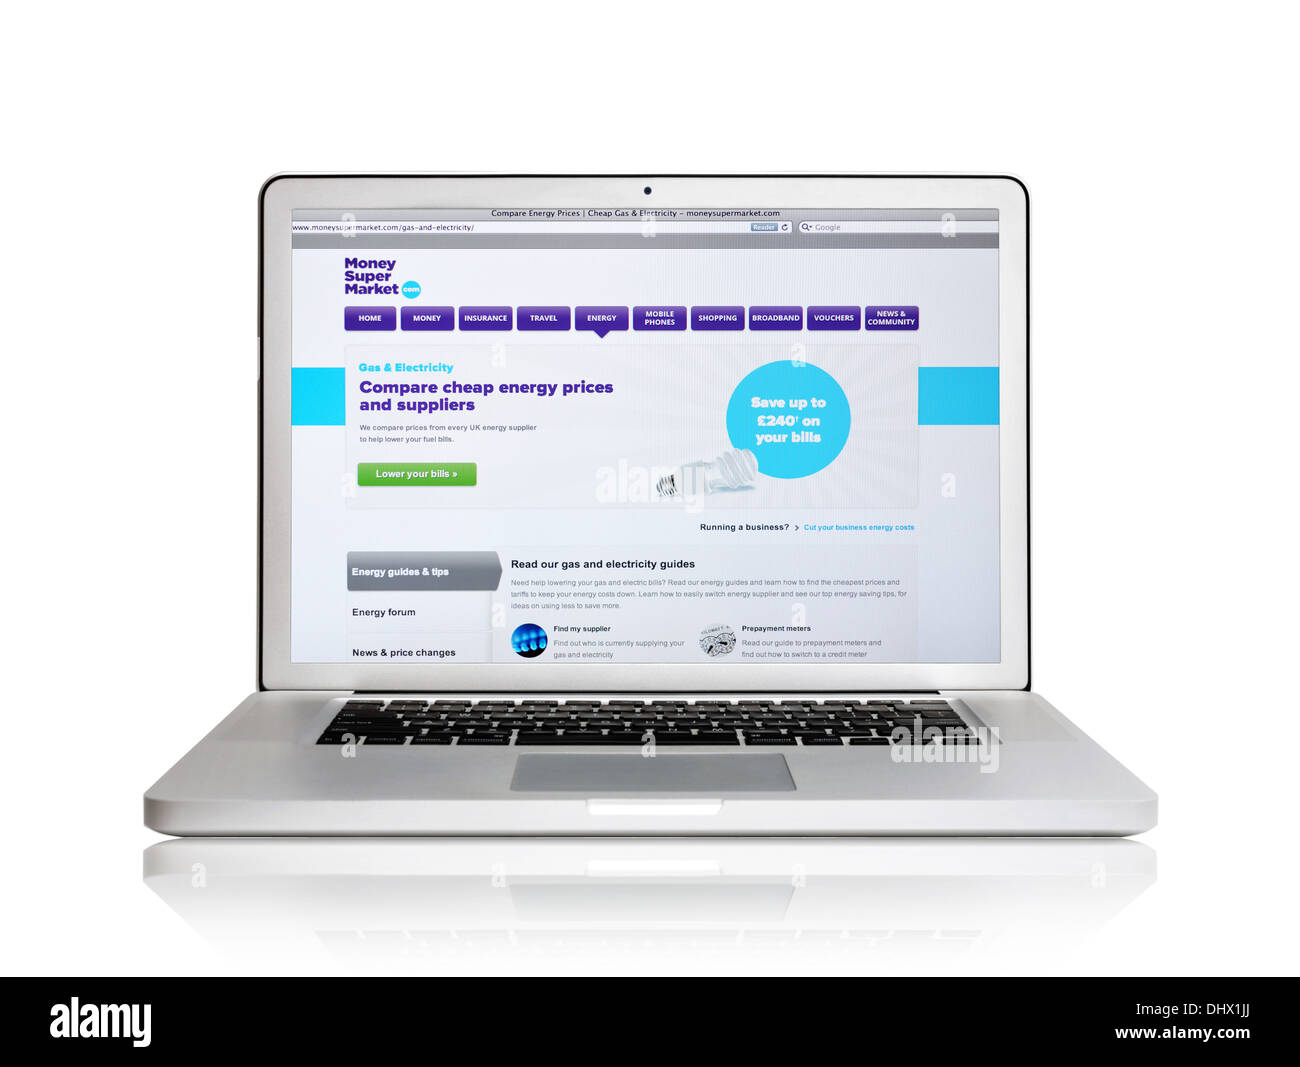 Sitio web MoneySuperMarket en la pantalla de un ordenador portátil Foto de stock